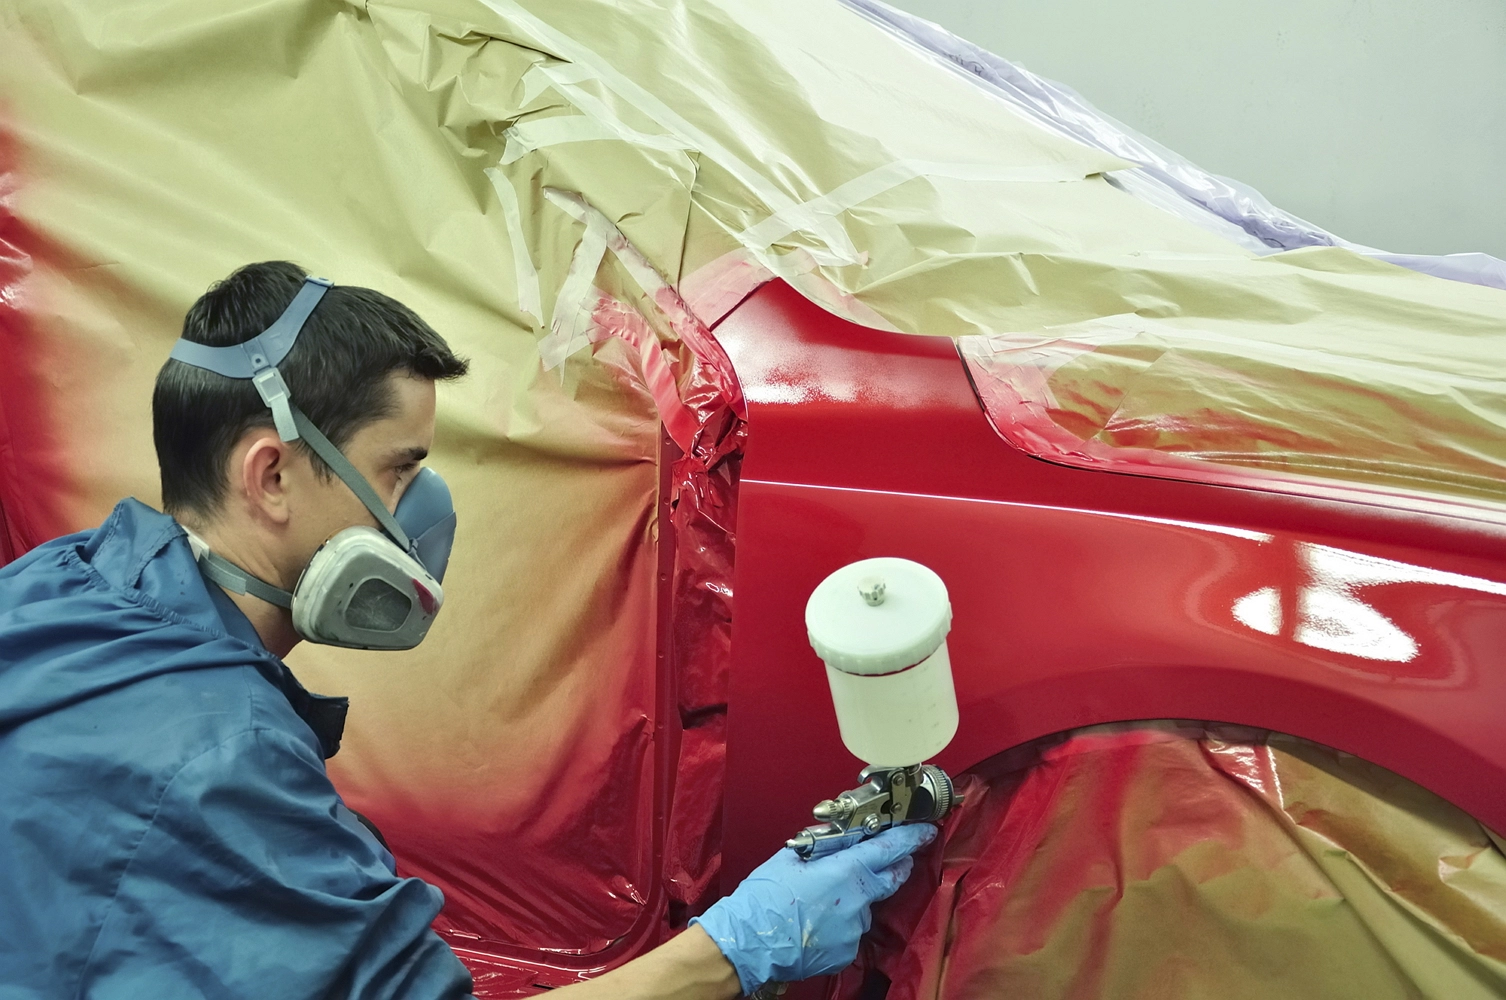 Покраска авто своими руками: как покрасить машину и кузов, технология, подготовка